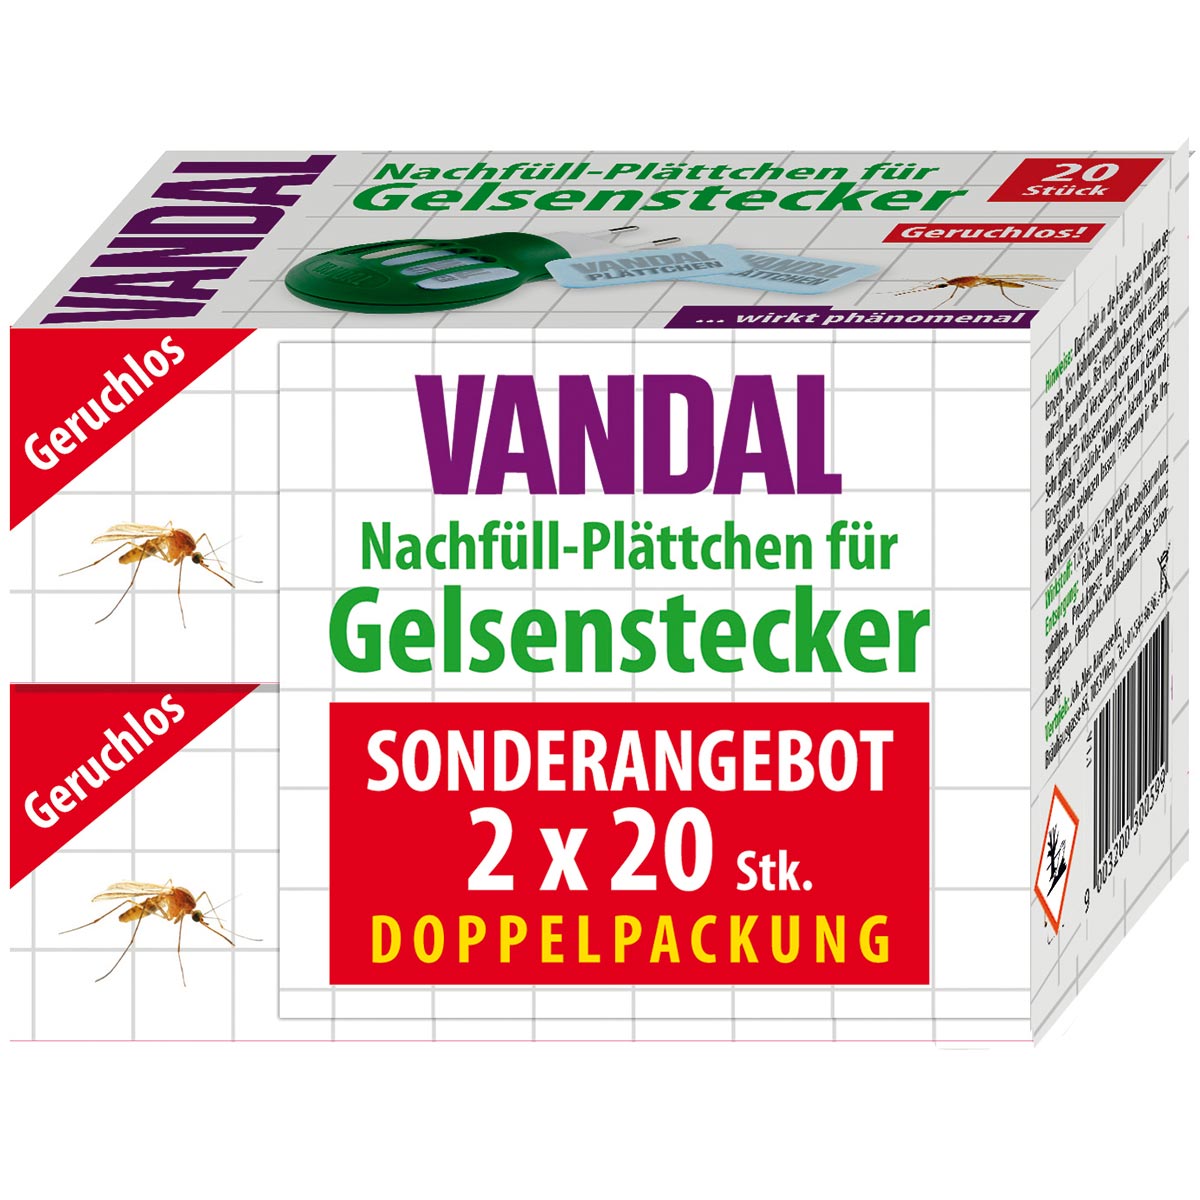 Vandal Gelsenstecker Nachfüll-Plättchen 2x 20 Stk.